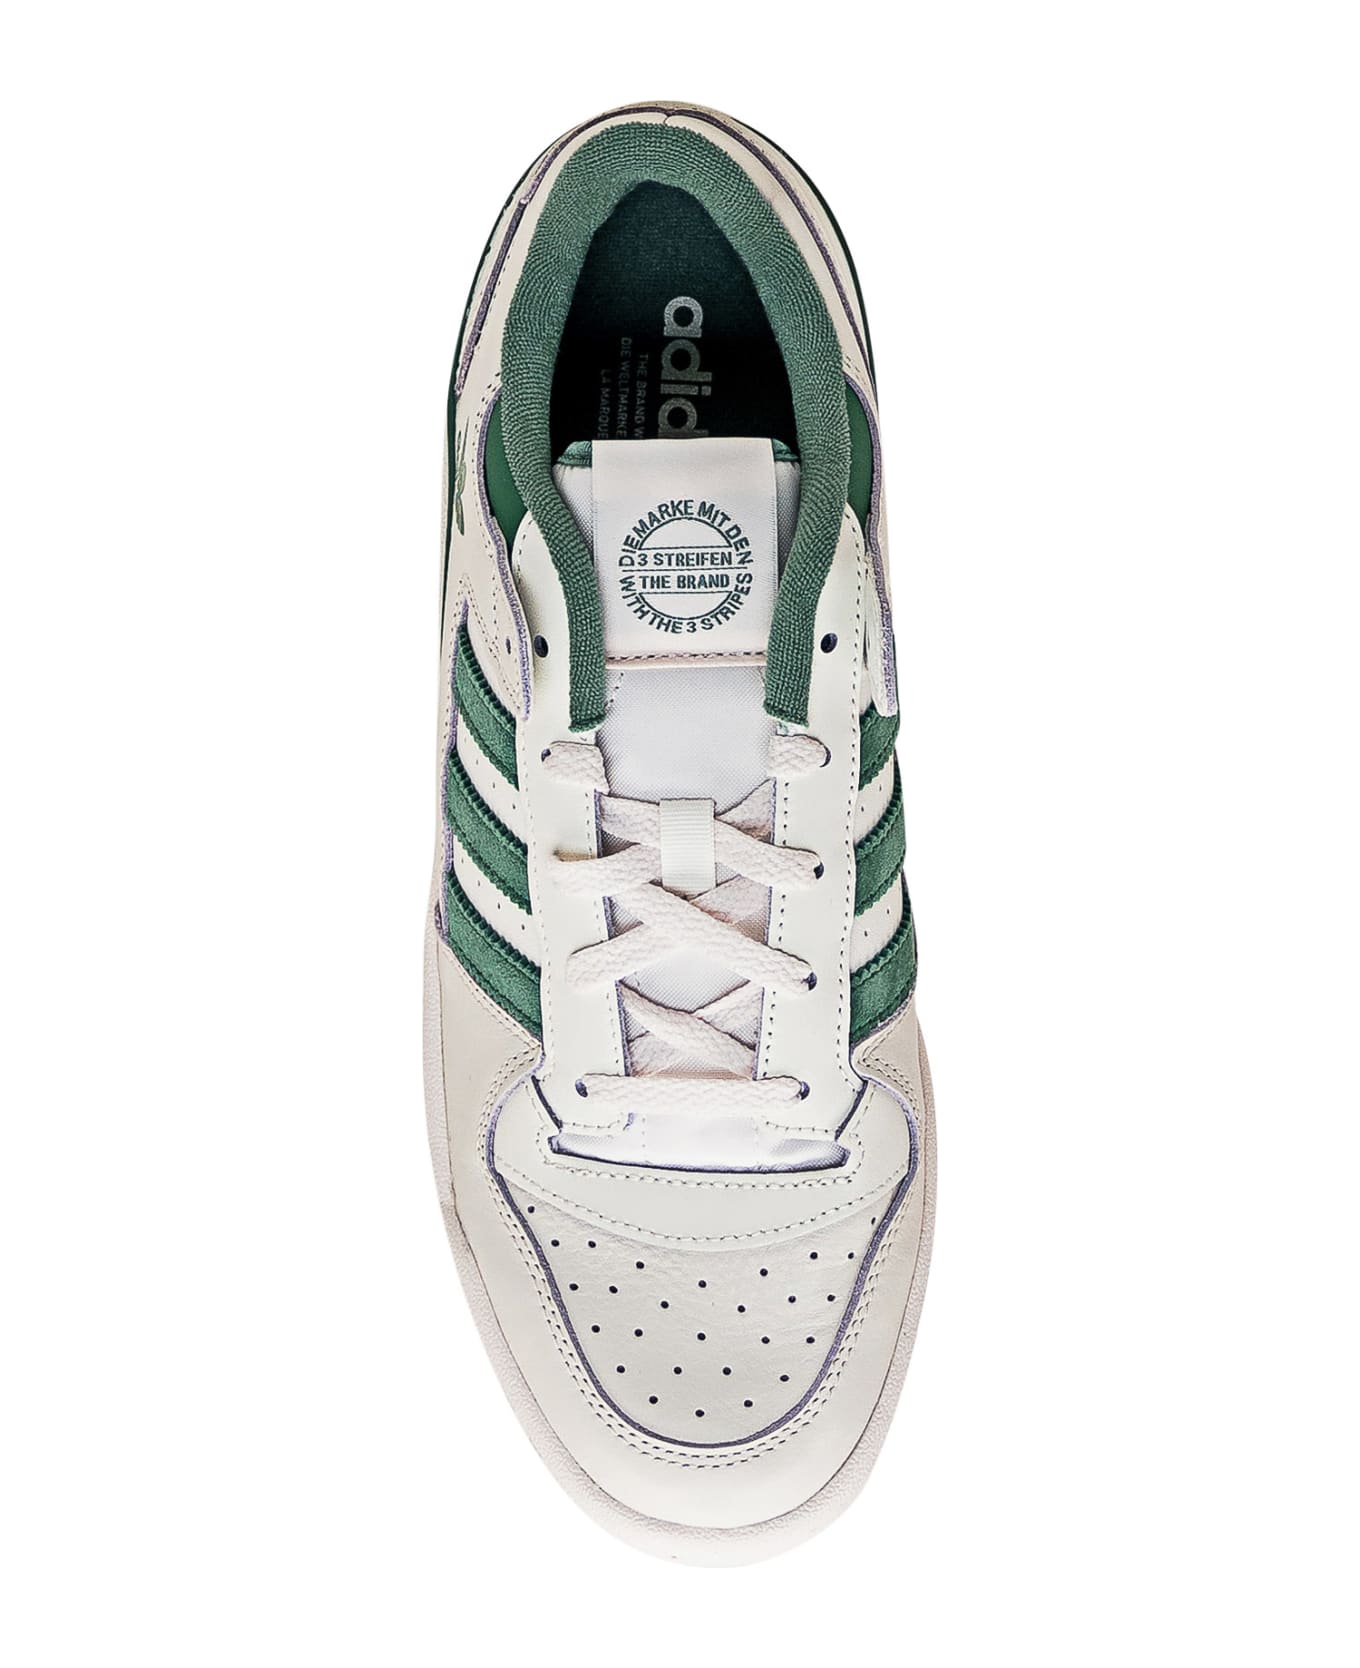 Adidas Originals Forum Low Sneaker - CLOWHI/PRLOGR/CLOWHI スニーカー